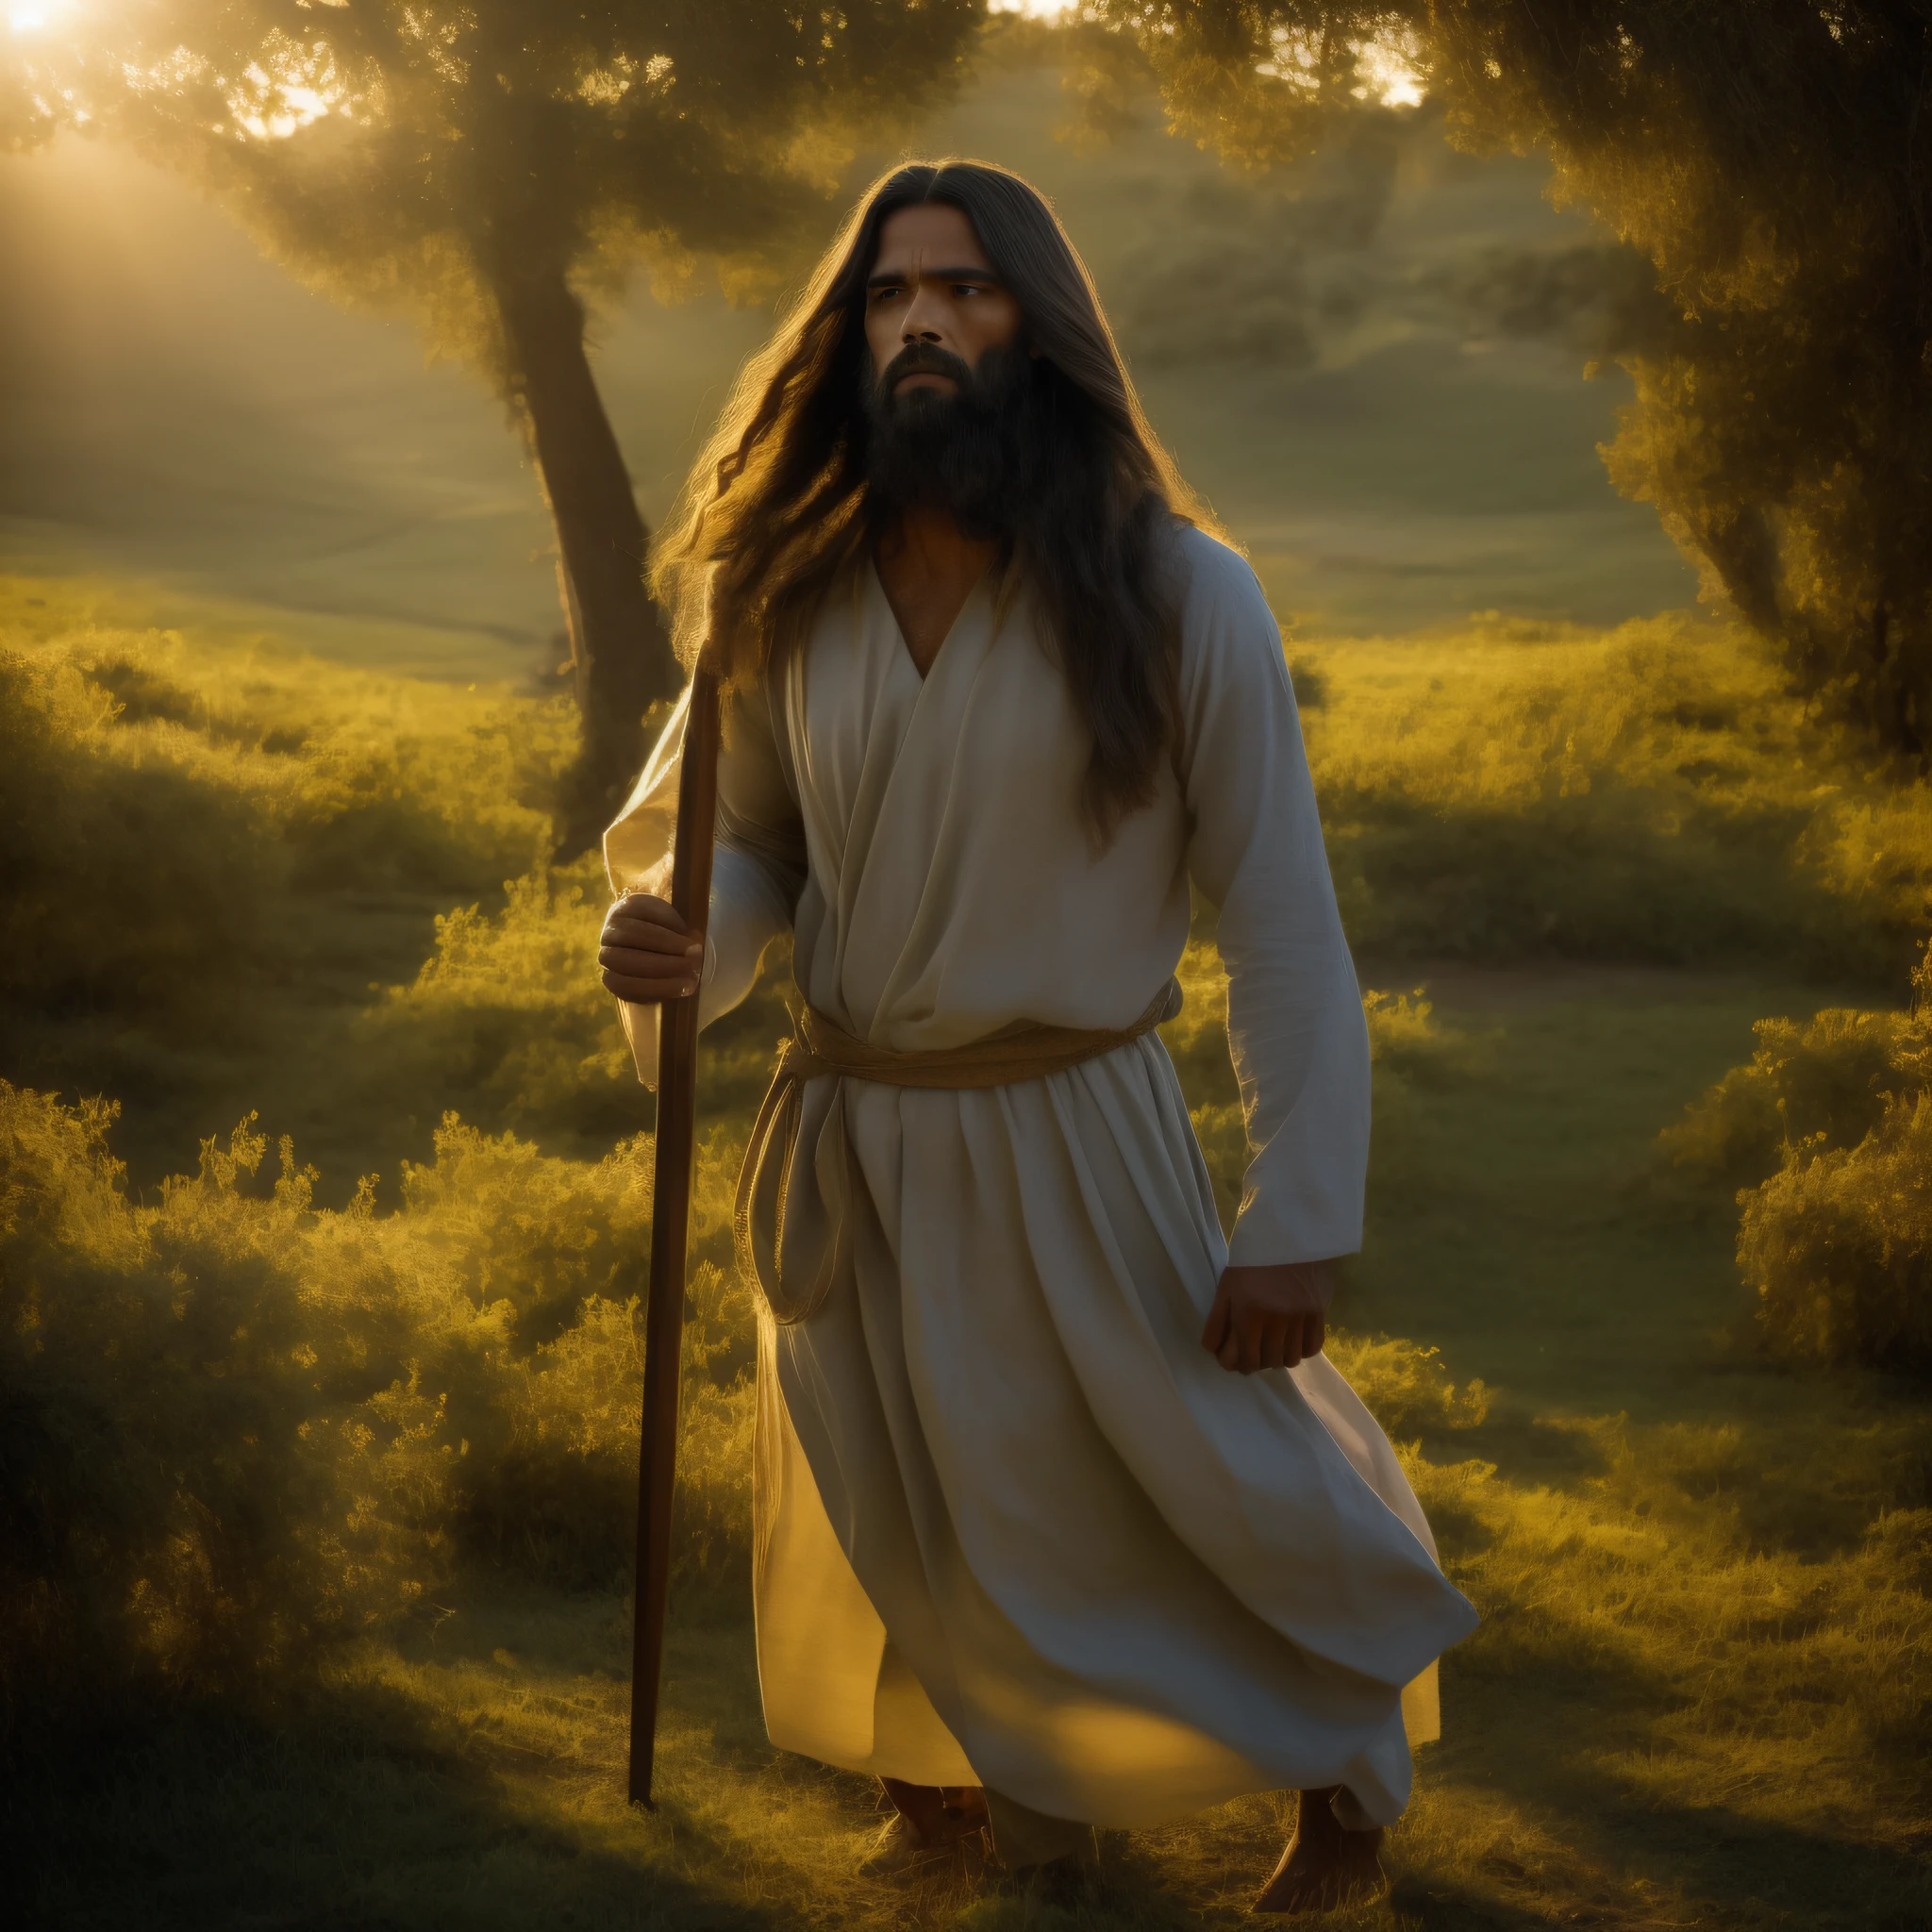 在图片中, 我们看到耶稣基督的详细描绘，这一场景让人回想起他的时代. 他穿着长, 简单的束腰外衣, 采用纹理面料制成，色调朴实. 他的头发和胡须很长，略带波浪, 展现他的男子气概和智慧.

他的眼睛深邃而富有同情心, 体现出神圣的宁静. 耶稣的目光传达了对所有人类无条件的爱和同情.

在他的手中, 他手持一根木雕权杖, 象征着他作为羊群牧羊人的角色. 在他后面, 一片翠绿的田野延伸开来, 点缀着野花和天然植物，代表着上帝的创造.

围绕耶稣, 有来自不同背景和社会条件的人. 有些弯腰驼背, 寻求安慰和指导, 而其他人则站着, 惊奇而充满希望地看着他. 他们的面部表情各异, 展现耶稣在每个人心中唤起的不同情感.

阳光柔和地照耀着整个场景, 营造宁静、温馨的氛围. 在背景中, 可以看到丘陵和丘陵, 让人想起耶稣居住过的地区的风景.